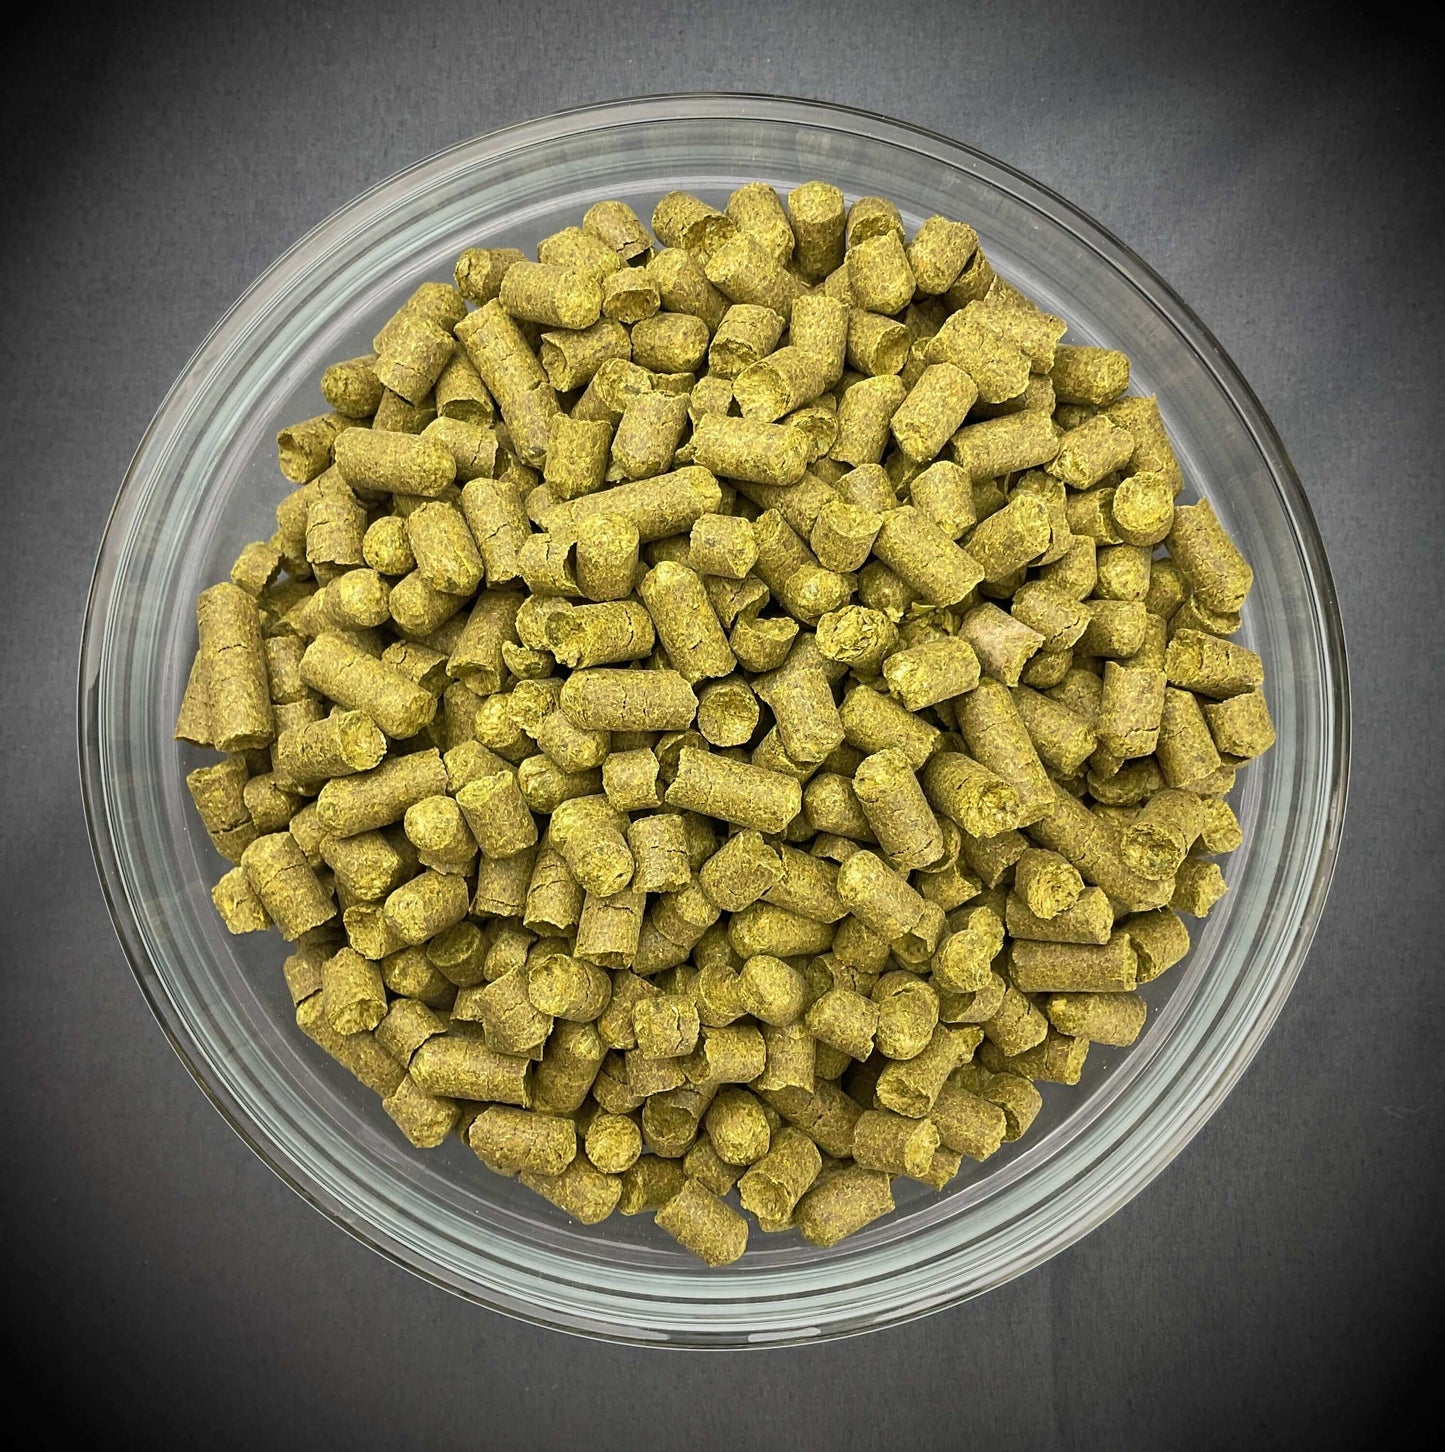 Northern Brewer Hops Pellets (GR) - 1 oz.